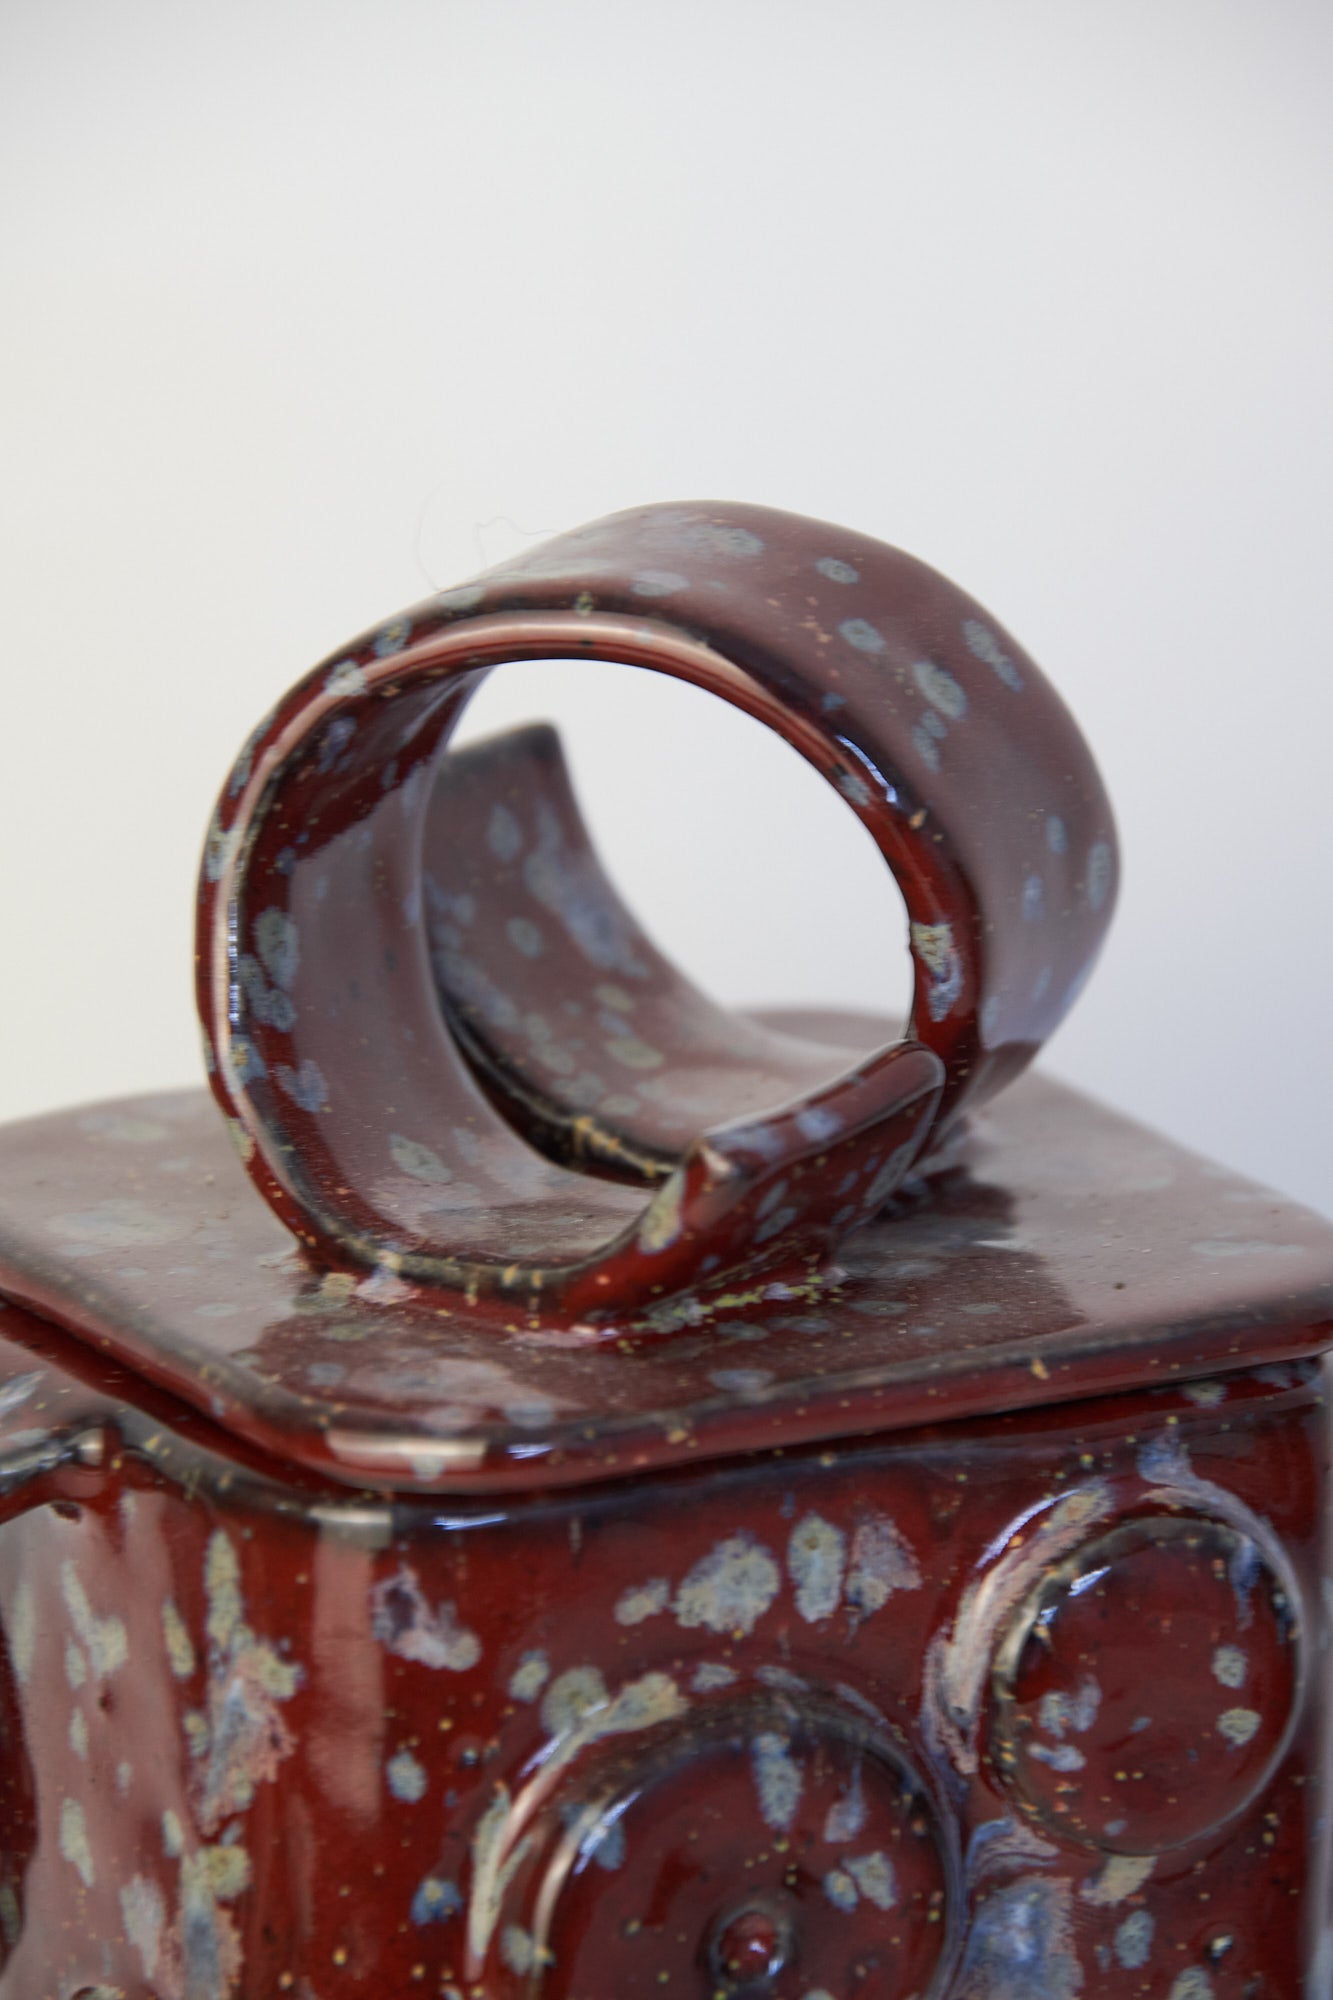 Burgundy Robot Ornamental Jar